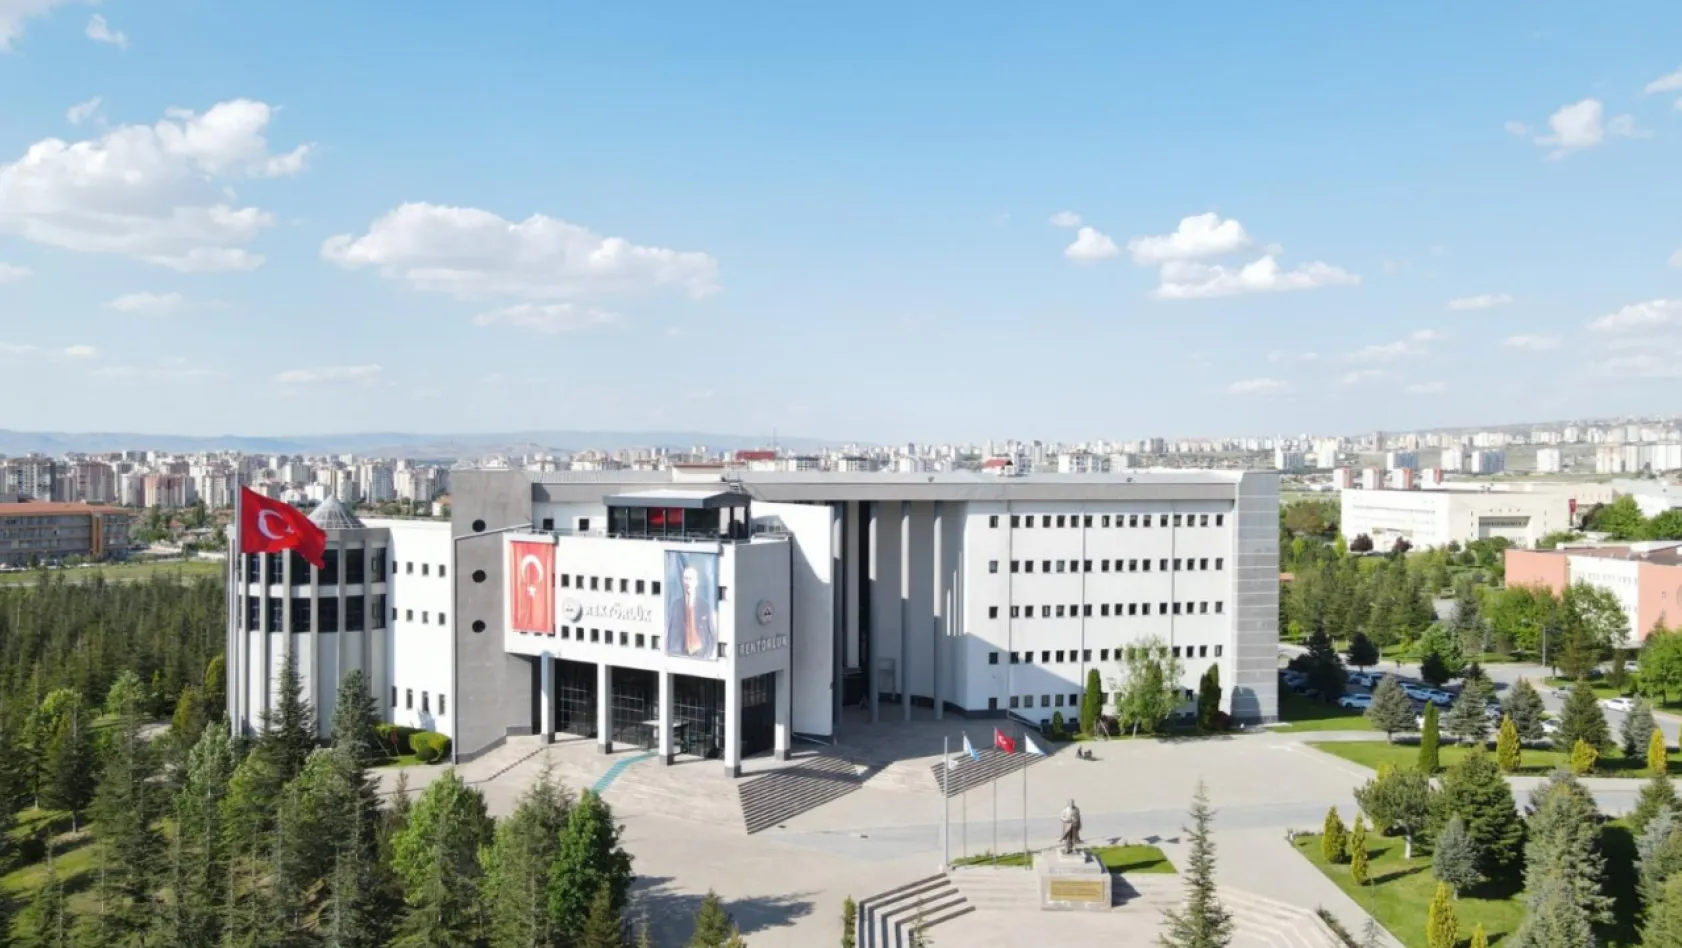 Erciyes Üniversitesi'nden 'Pedagojik' uyarı! 4 gün önce alınan Senato kararına dikkat çekildi